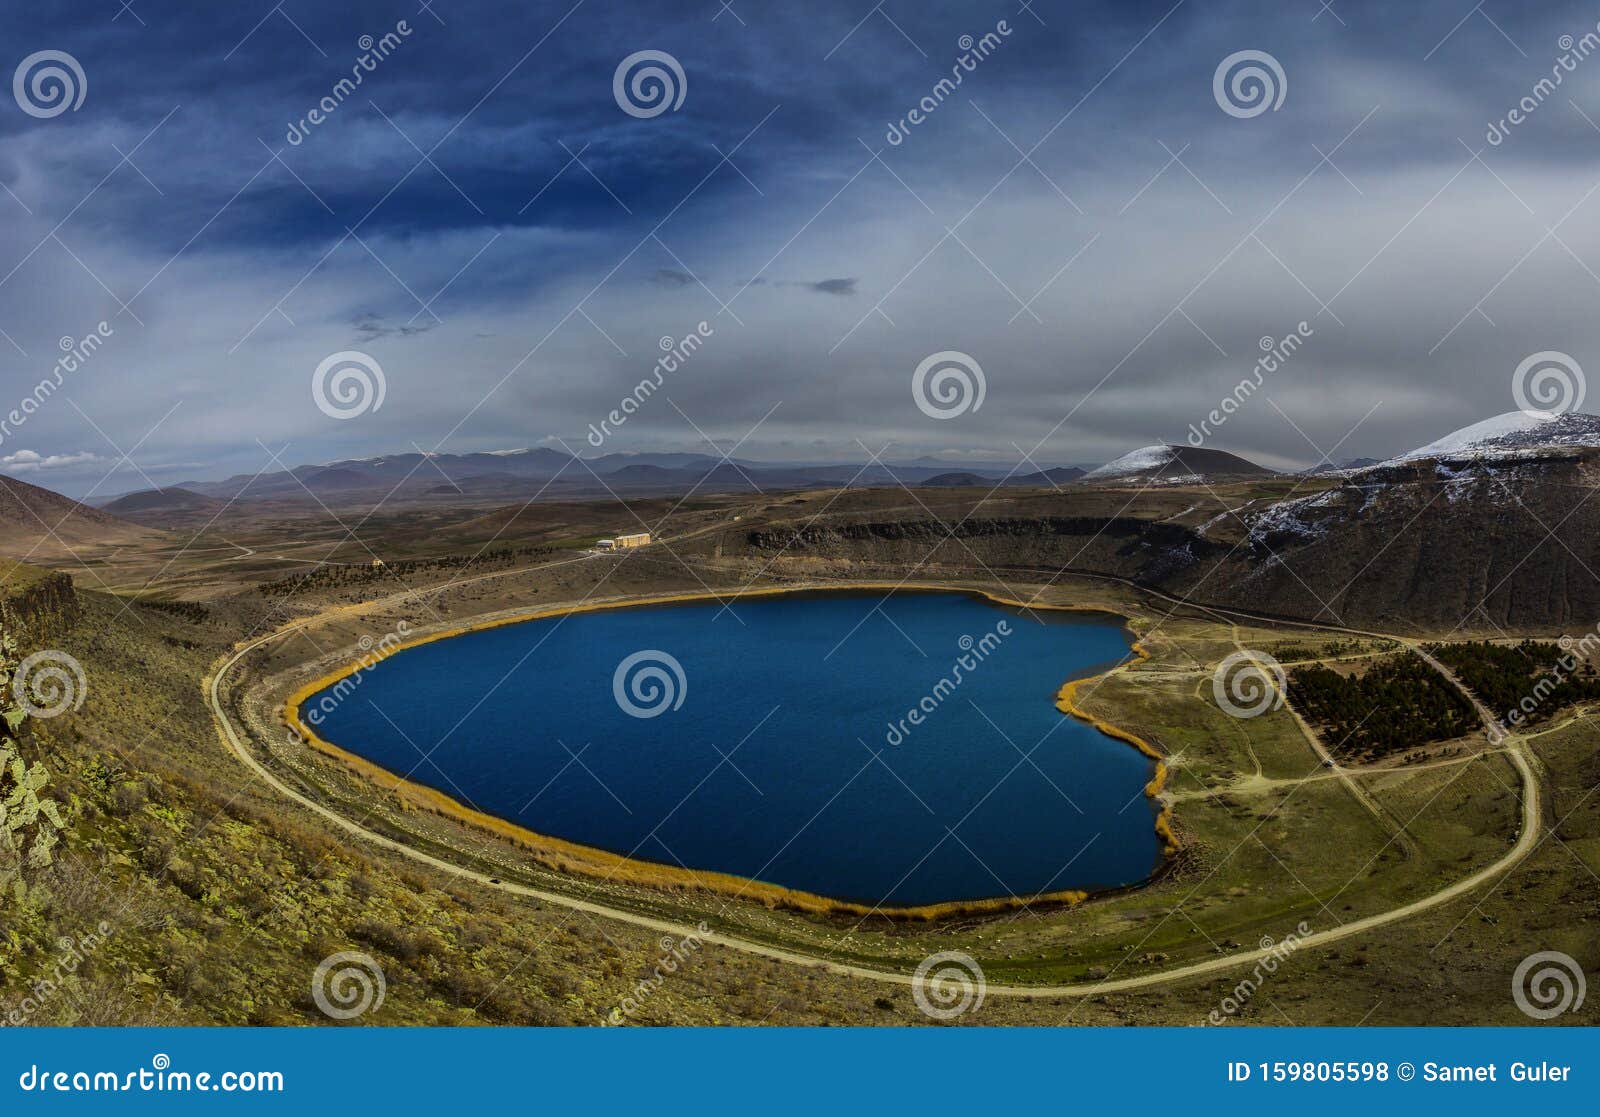 卡帕多西亚 心形石榴湖 火山口湖库存照片 图片包括有火鸡 蓝色 字段 旅游业 云彩 横向